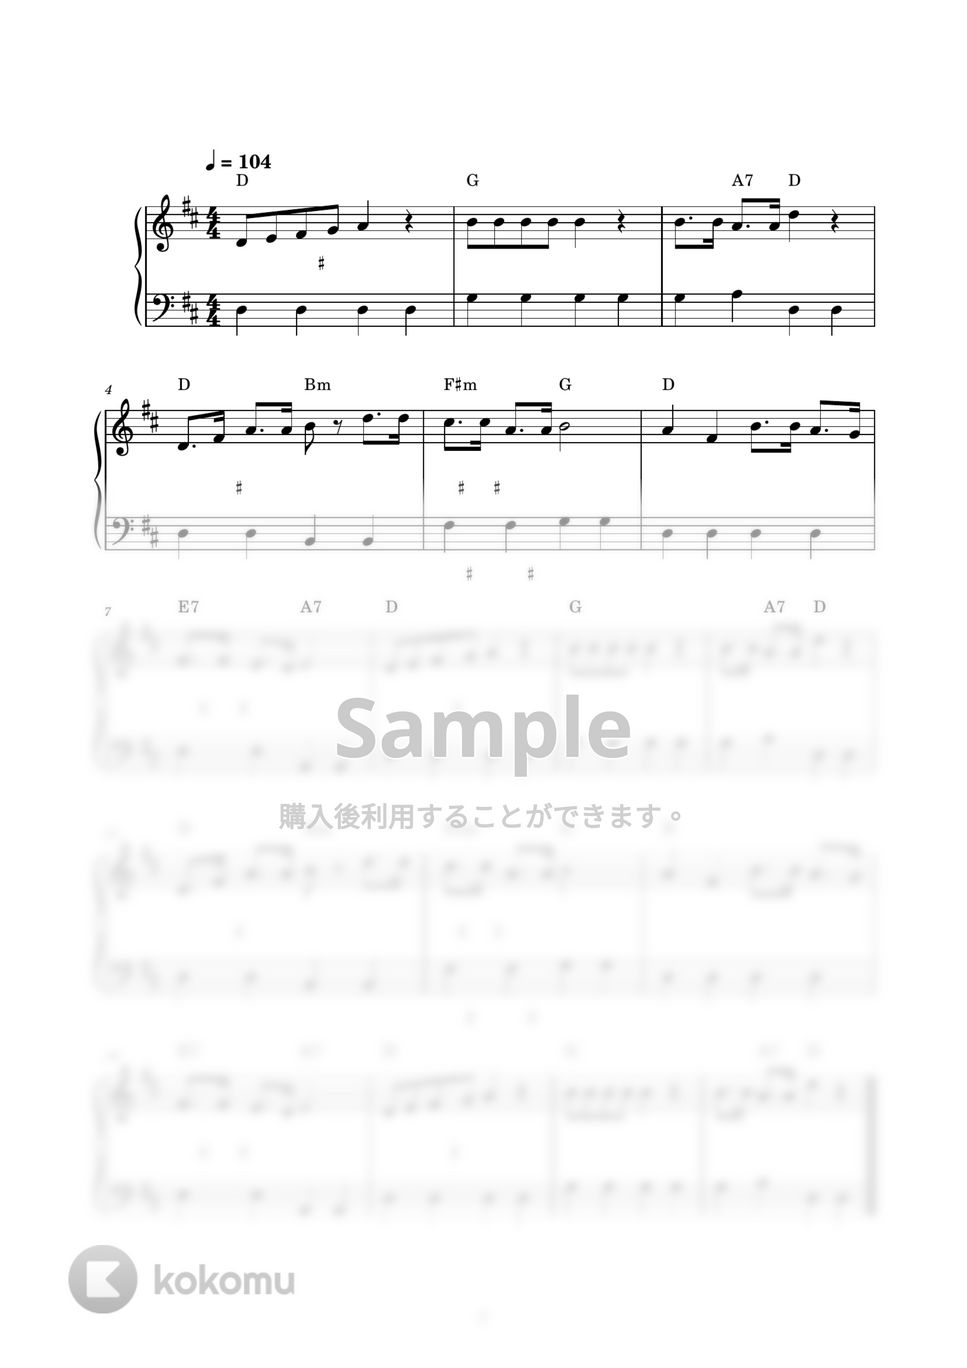 ことりのうた (ピアノ楽譜 / かんたん両手 / 歌詞付き / ドレミ付き / 初心者向き) by piano.tokyo